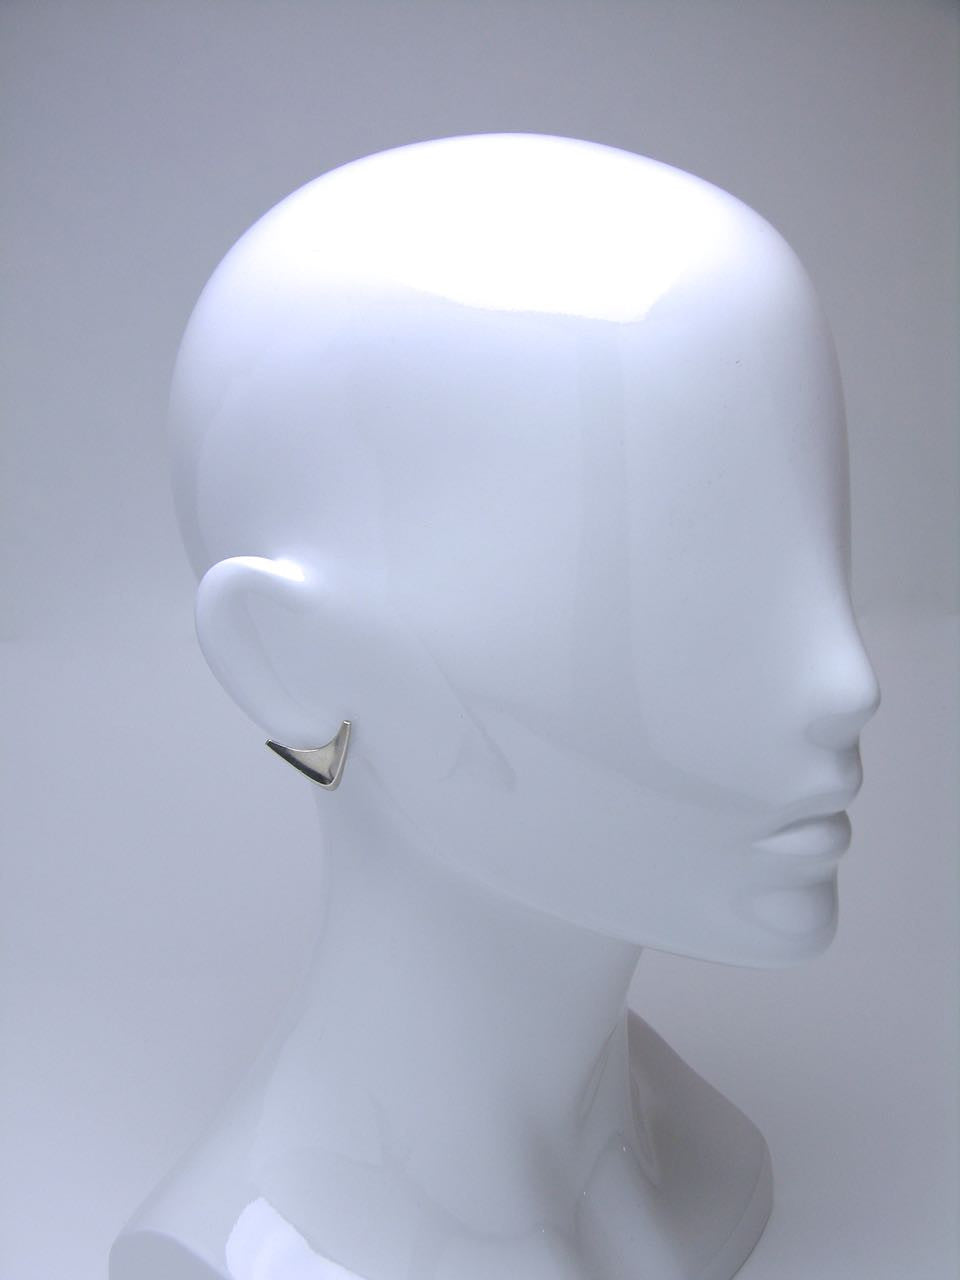 Vintage Danish Silver Modernist Arrow Head Clip Earrings